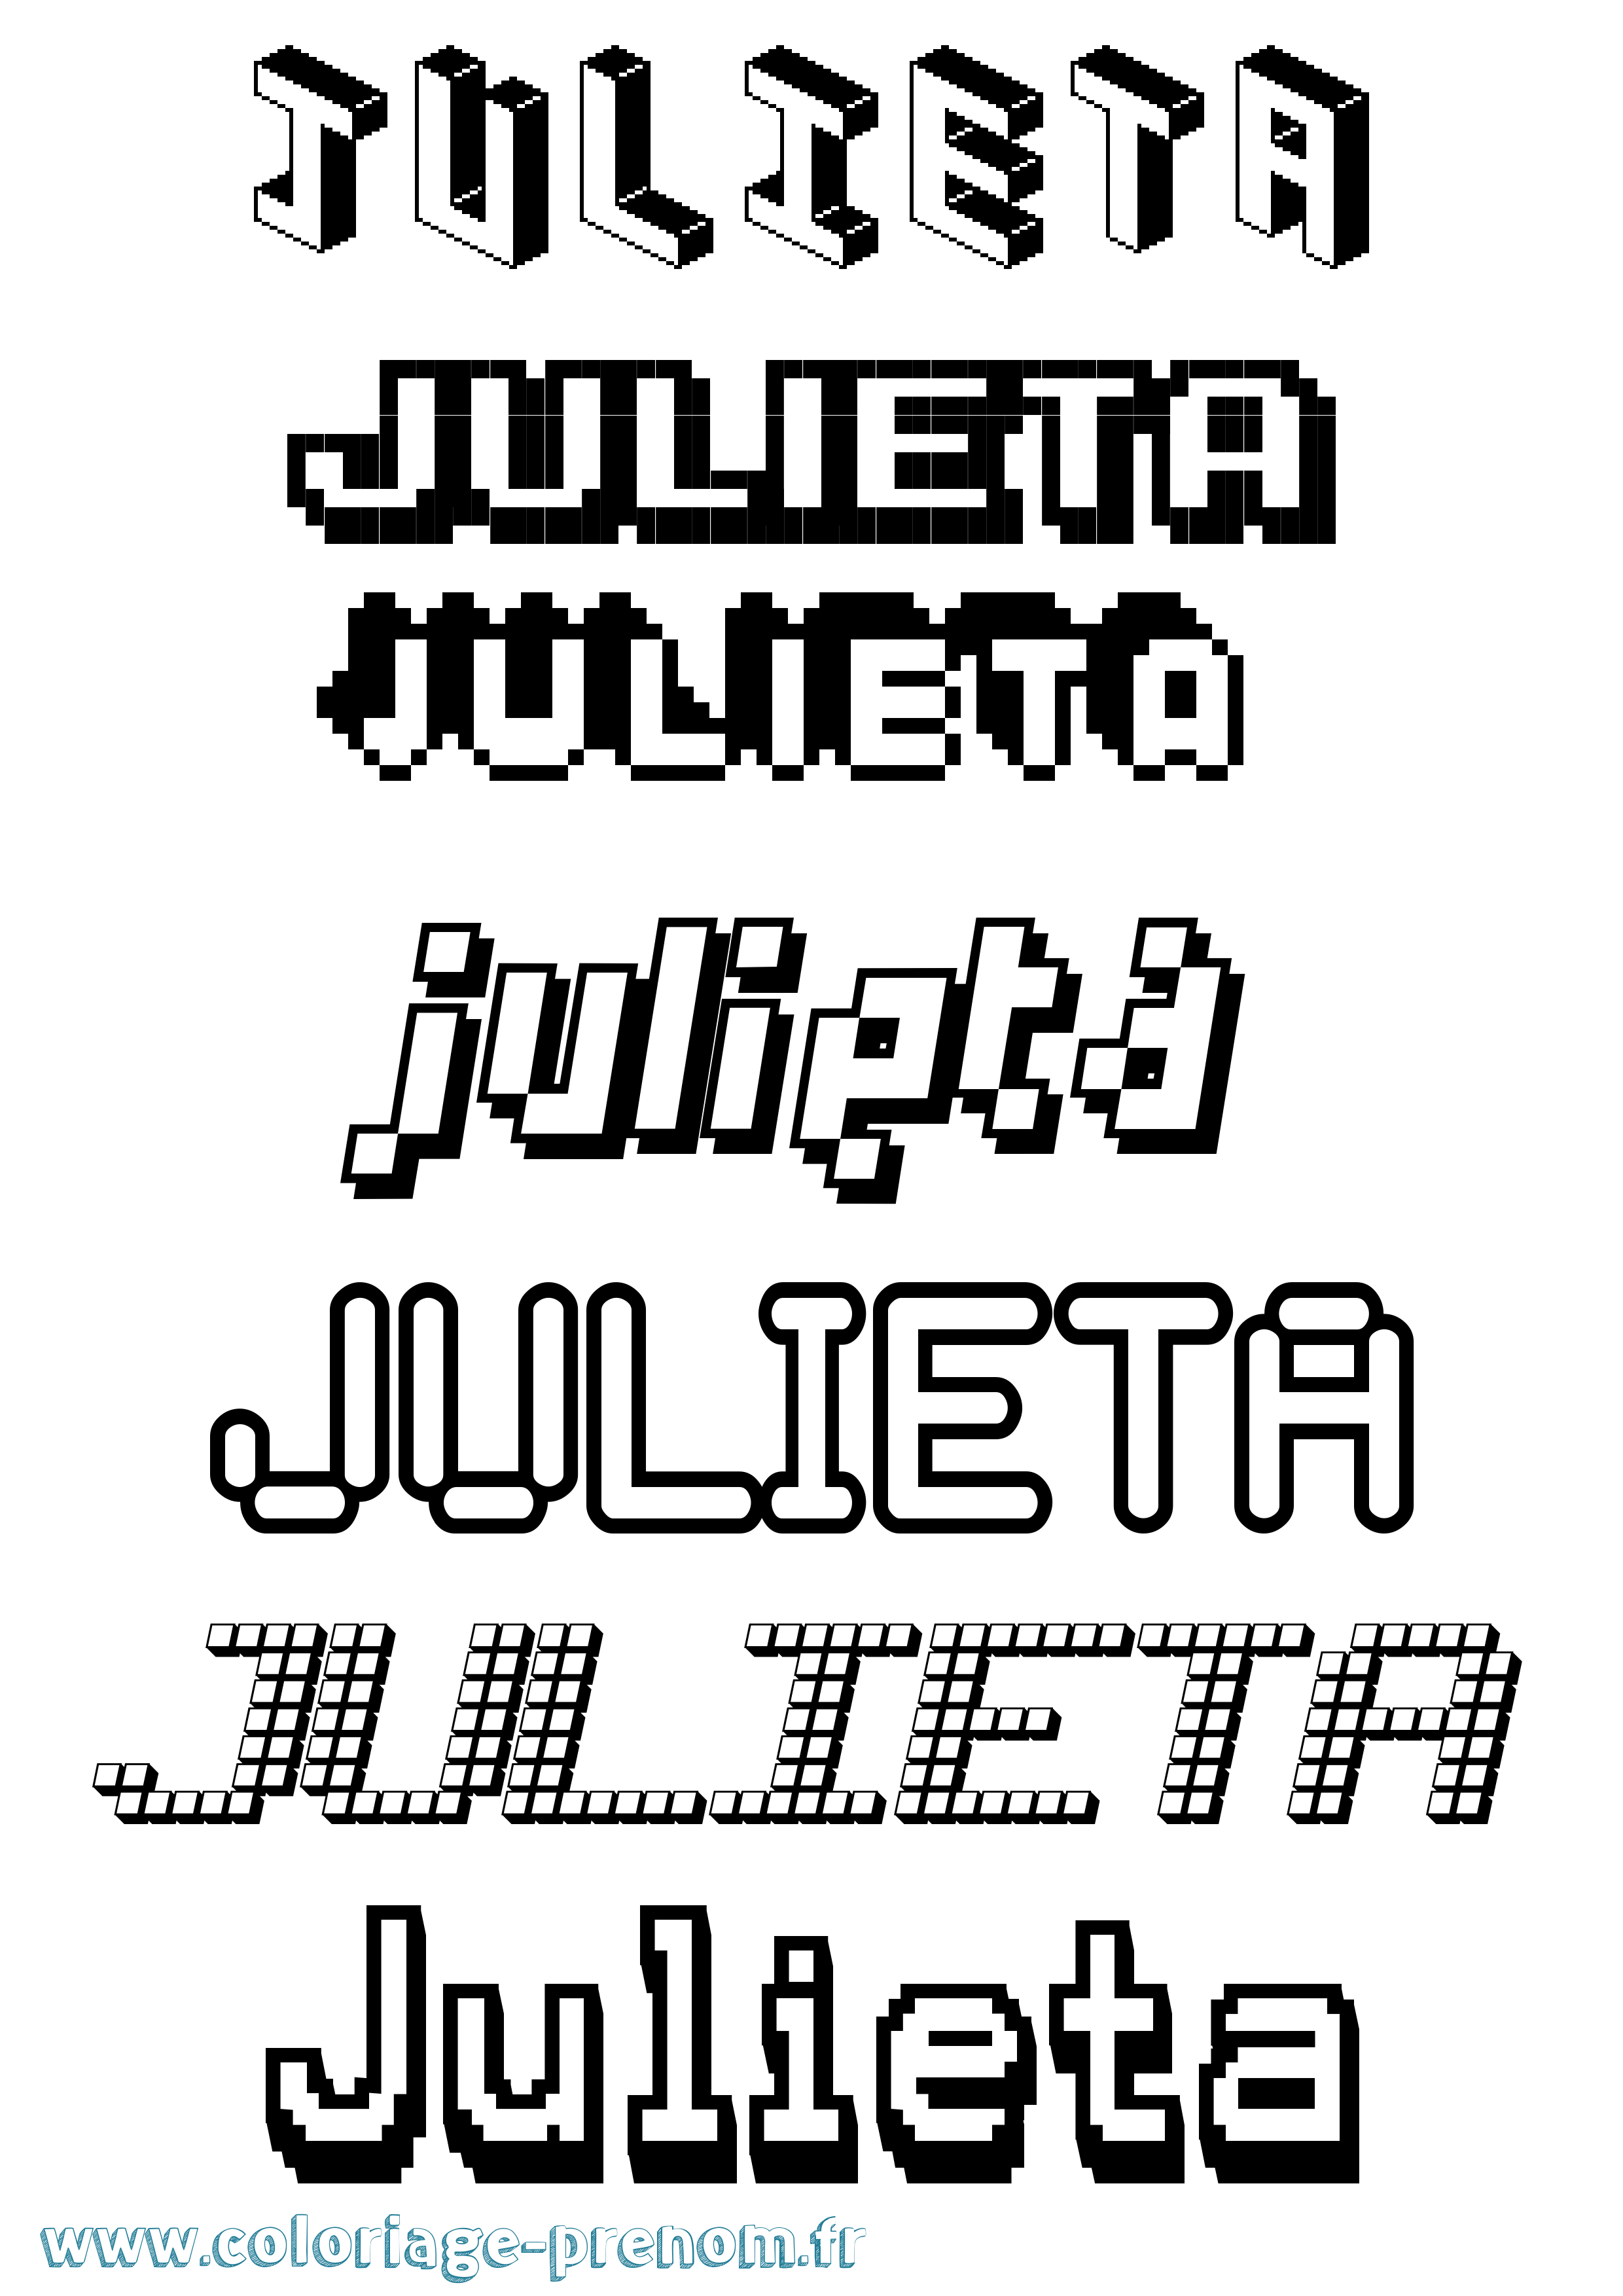 Coloriage prénom Julieta Pixel